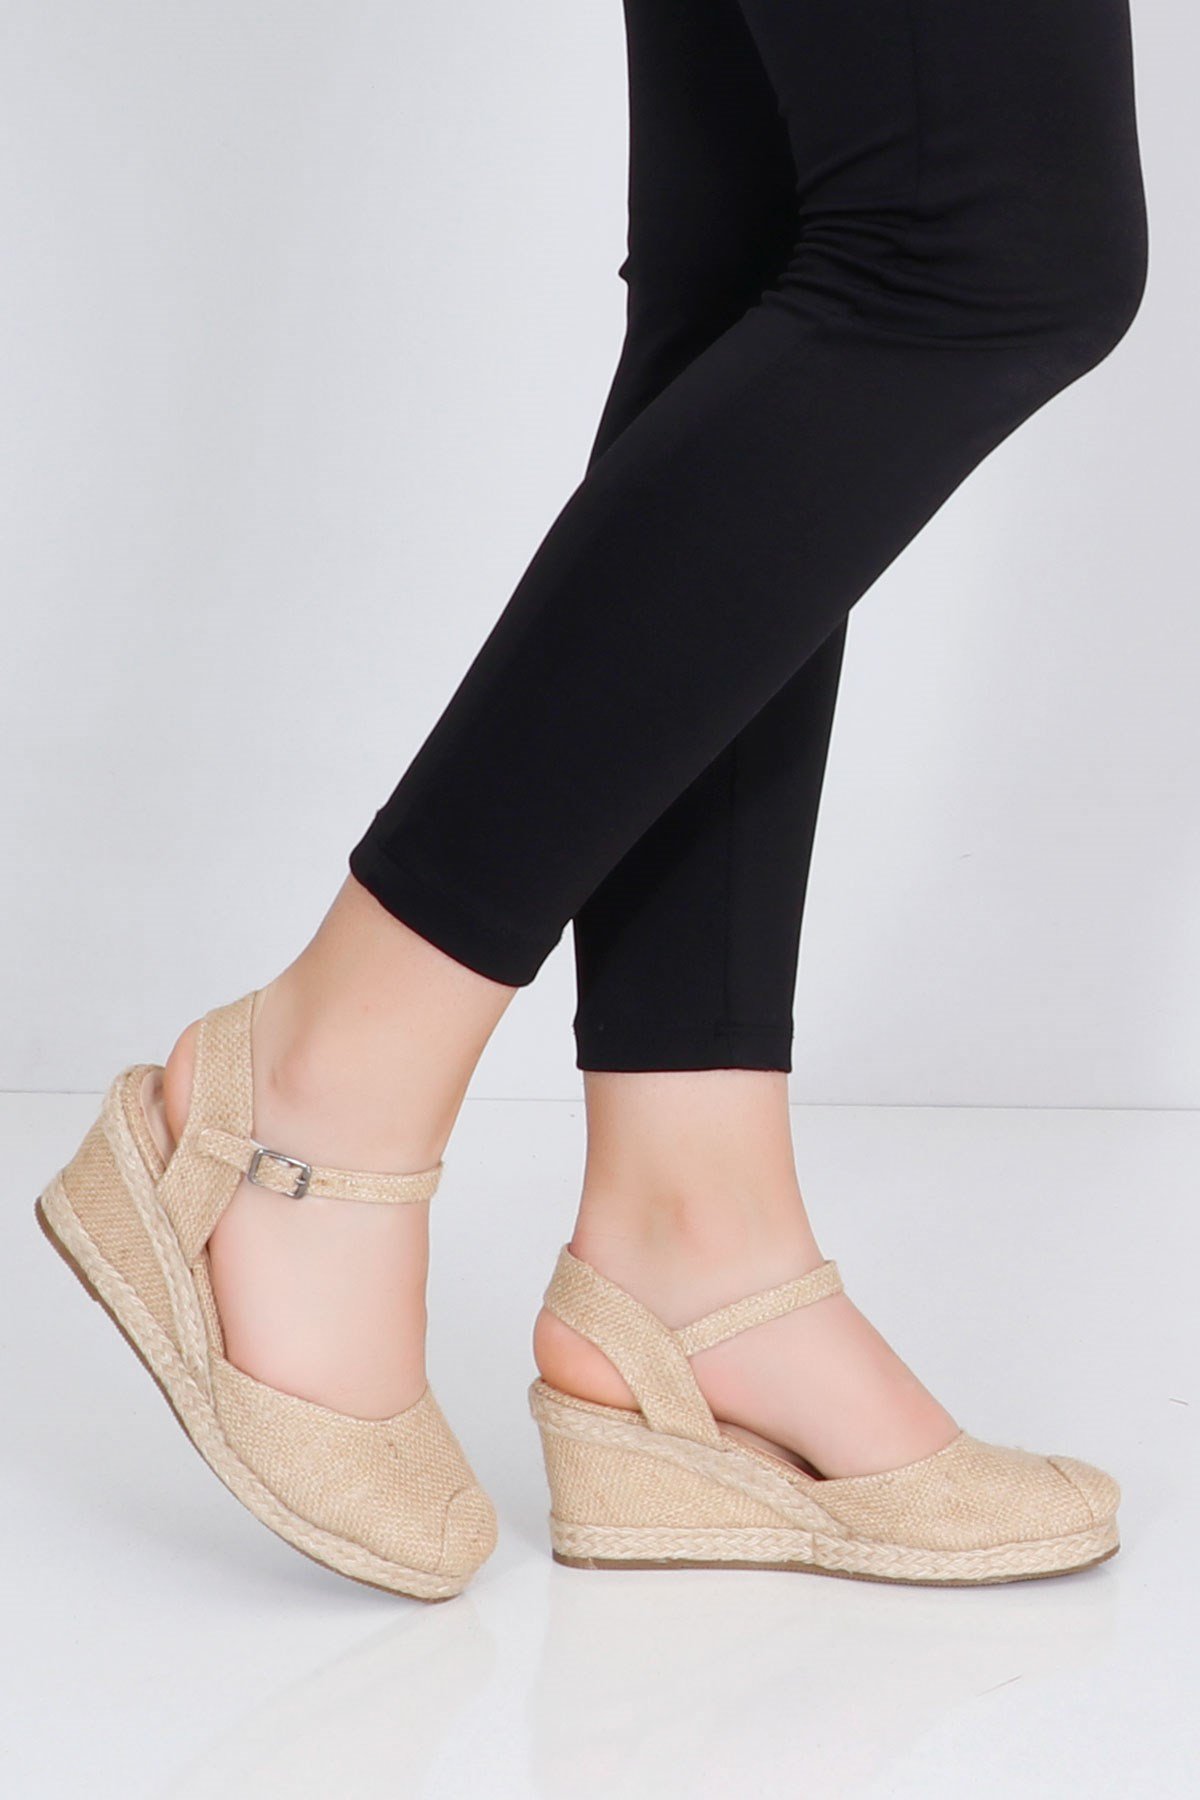 Ten keten Önü Kapalı Dolgu Topuk Kadın Sandalet Hasır 20-3 Fiyatı ve  Modelleri